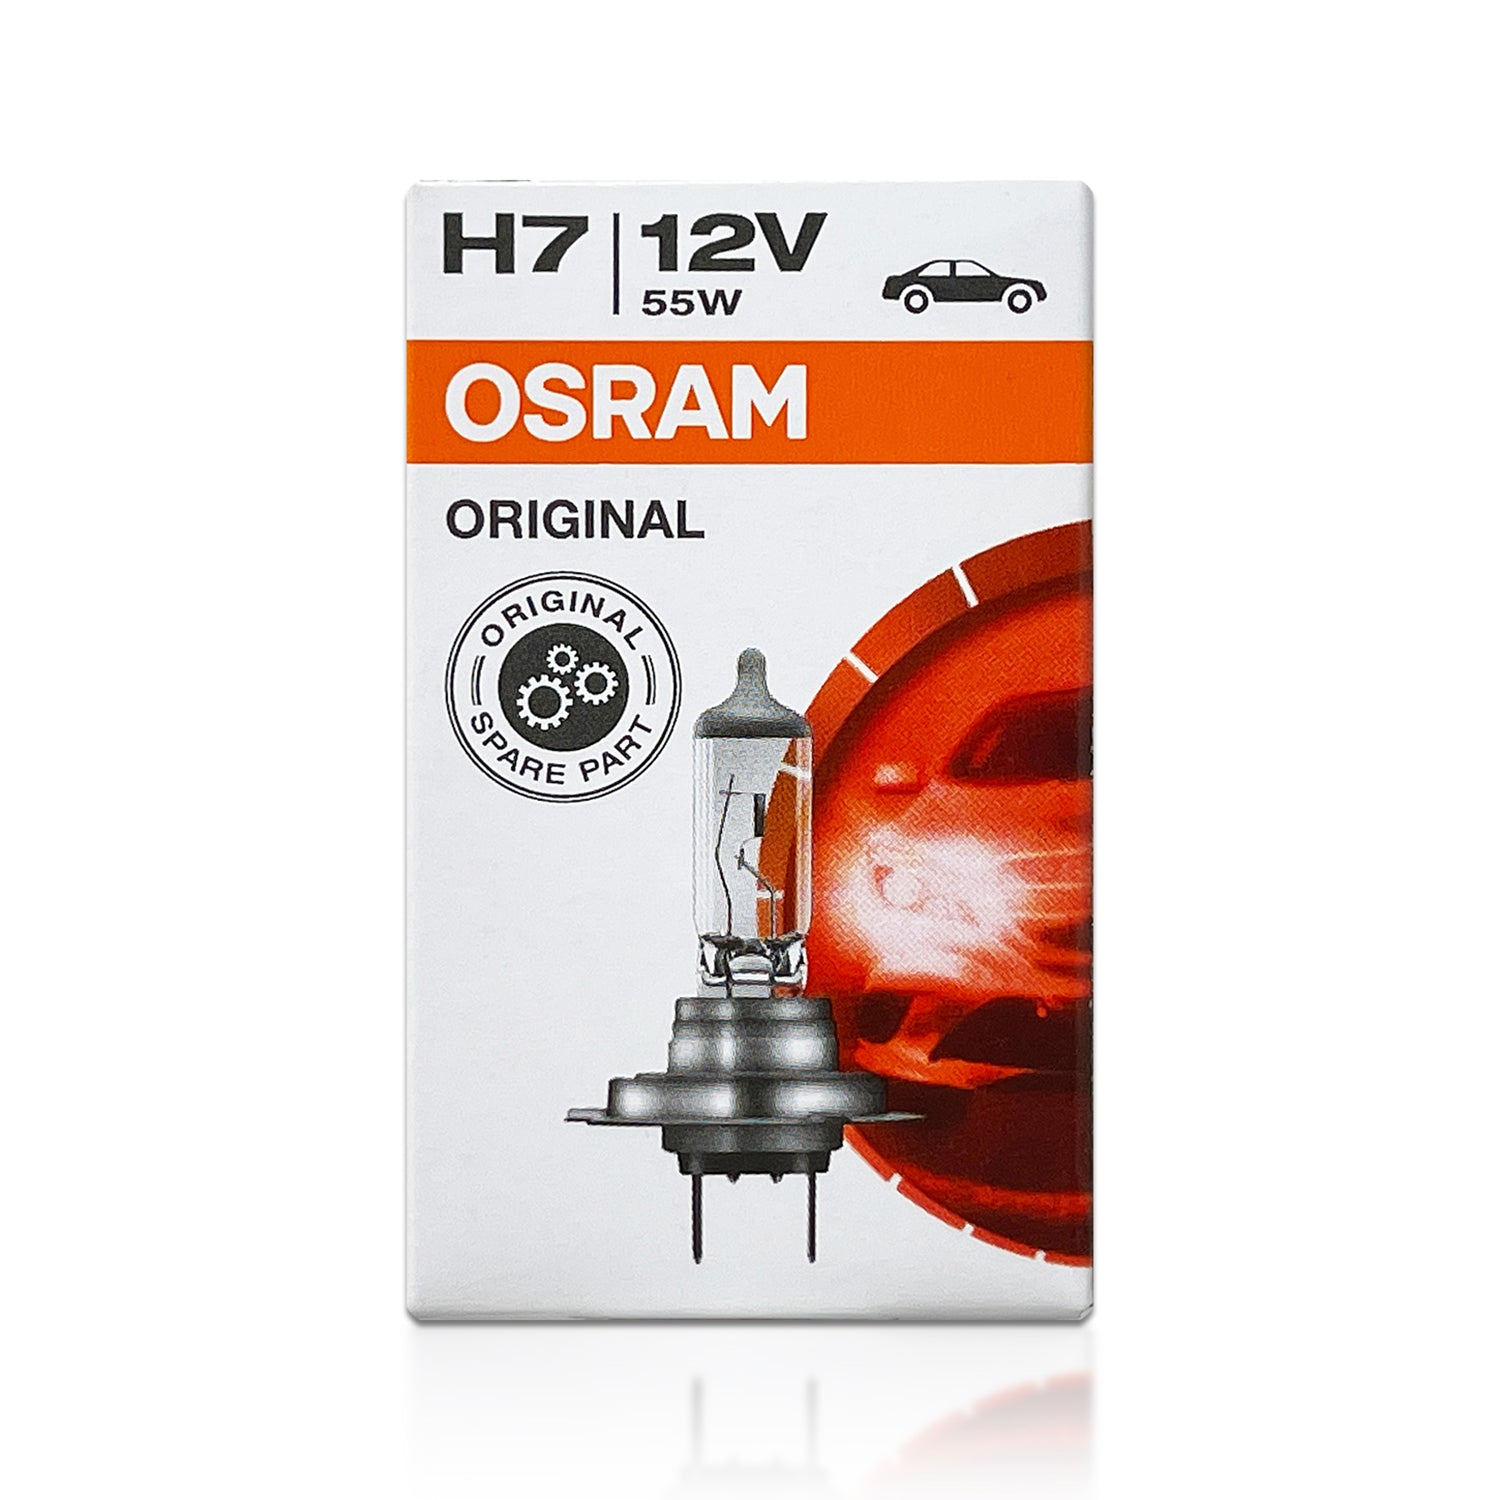 OSRAM H7 12V 55W PX26d 3200K 64210 Original Line Bulb Standard